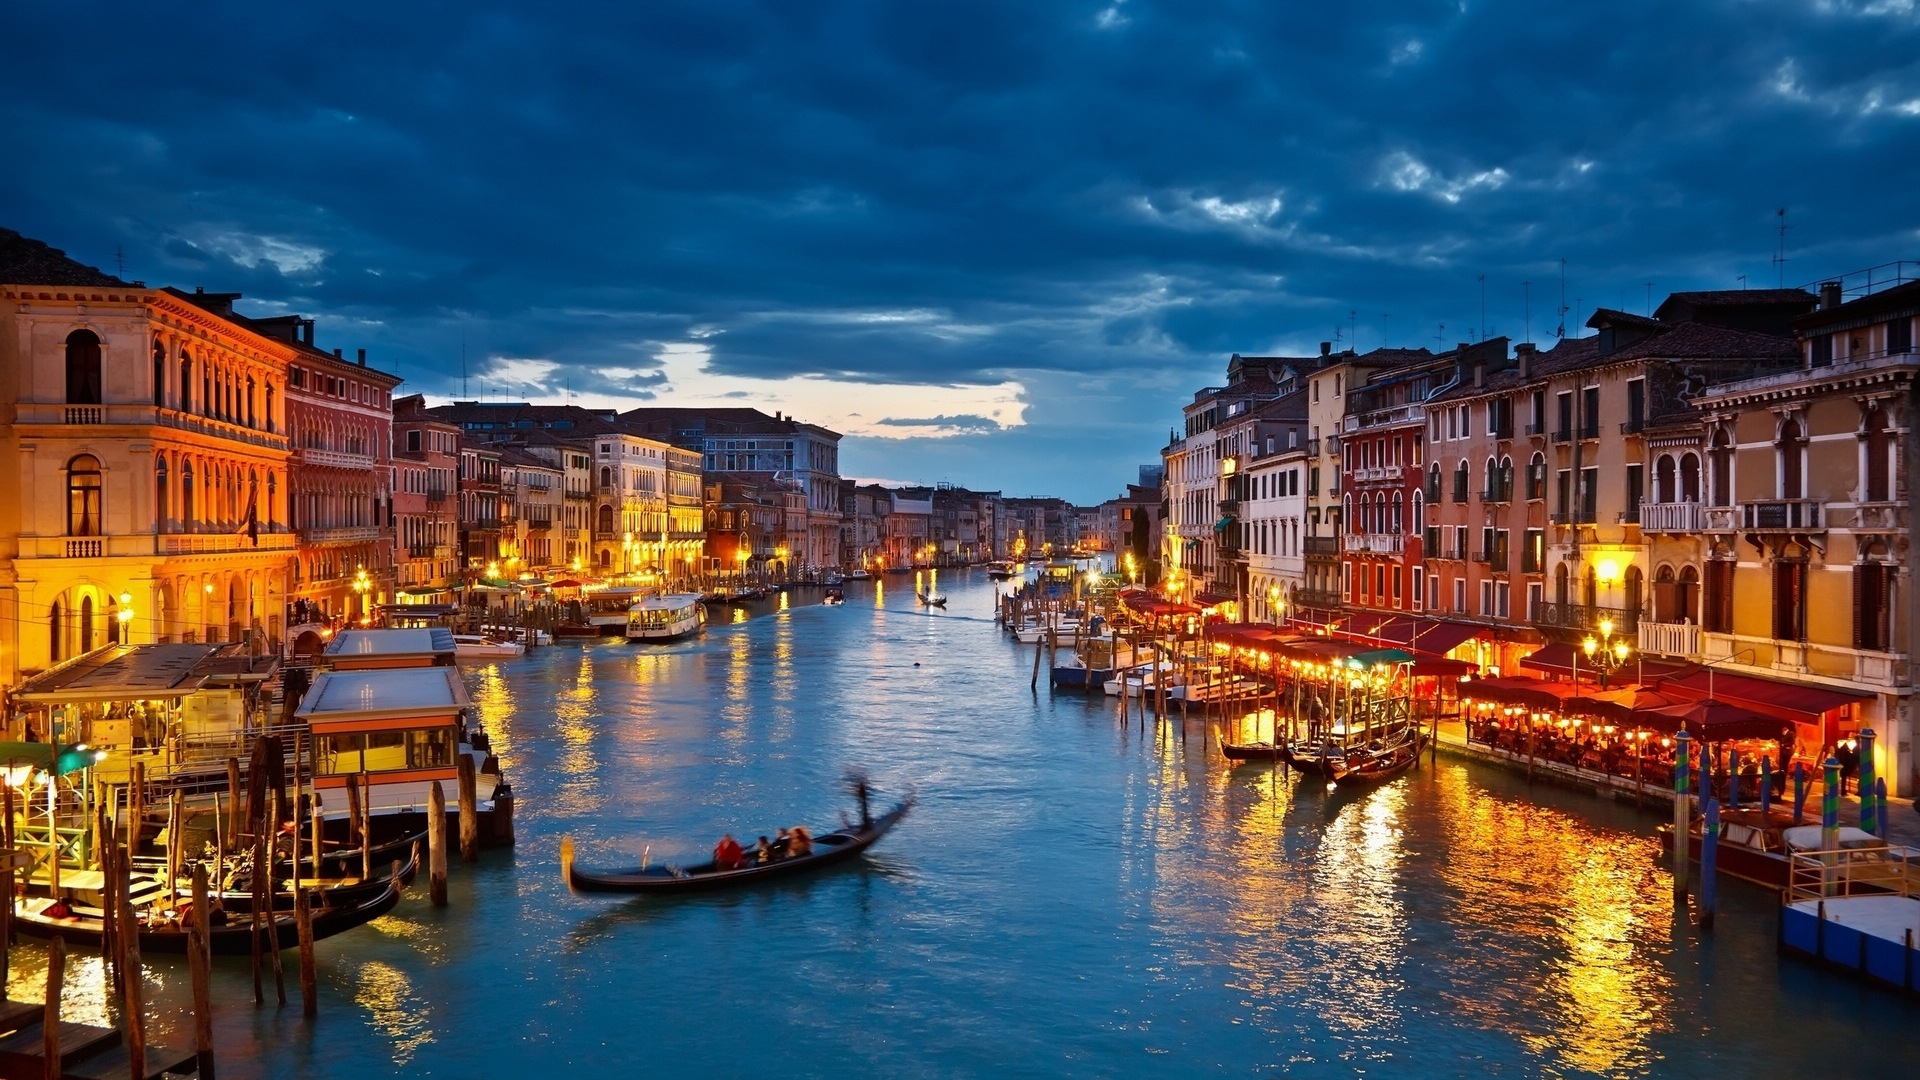 美麗的水城 威尼斯高清壁紙 6 19x1080 壁紙下載 美麗的水城 威尼斯高清壁紙 風景壁紙 V3壁紙站